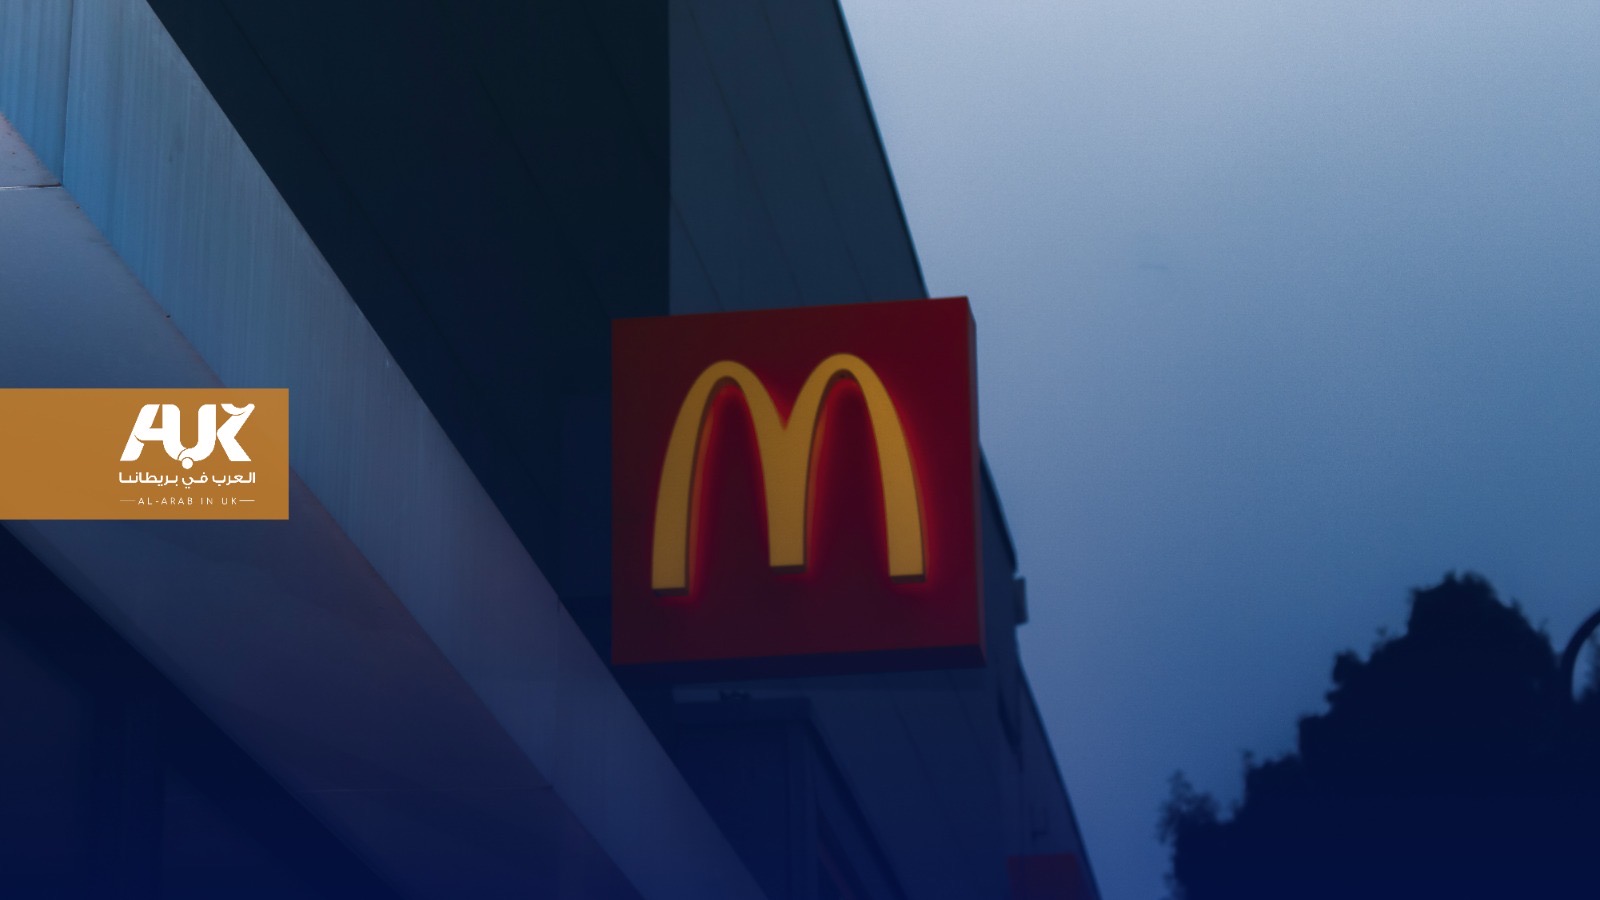 ماكدونالدز تُخفق في تحقيق المبيعات المستهدفة بسبب المقاطعة